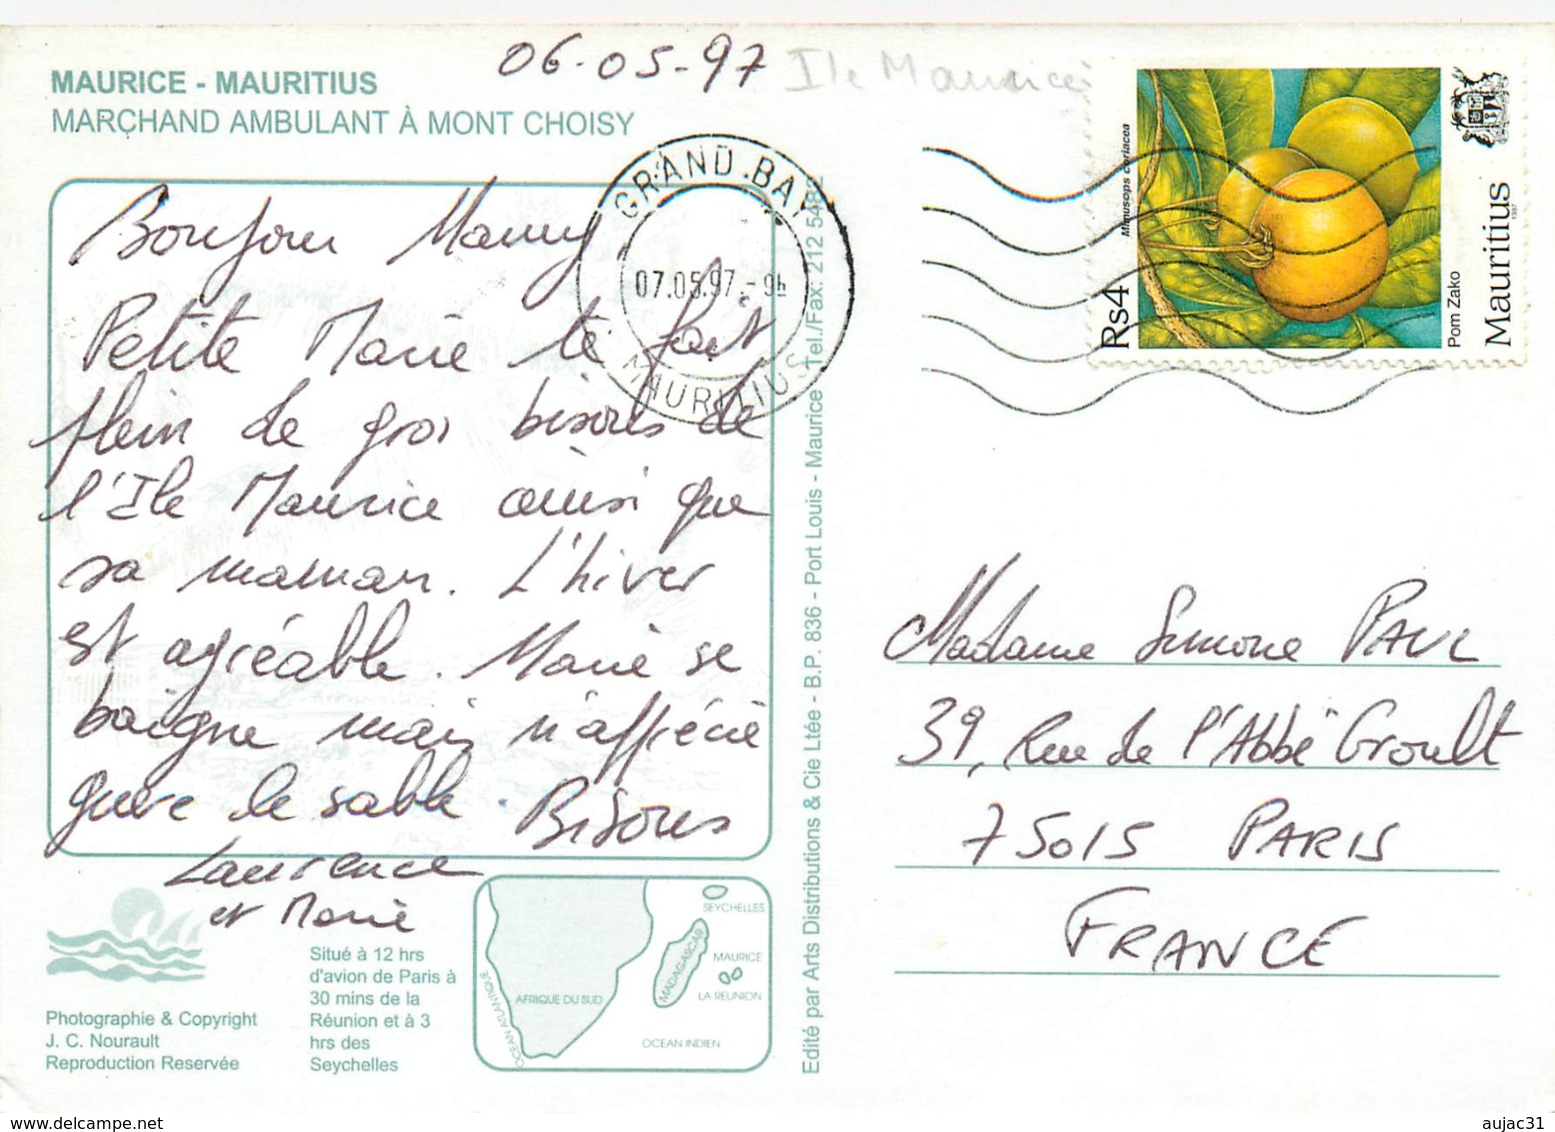 Ile Maurice - Mauritius - Marchant Ambulant à Mont Choisy - Moderne Grand Format - état - Maurice